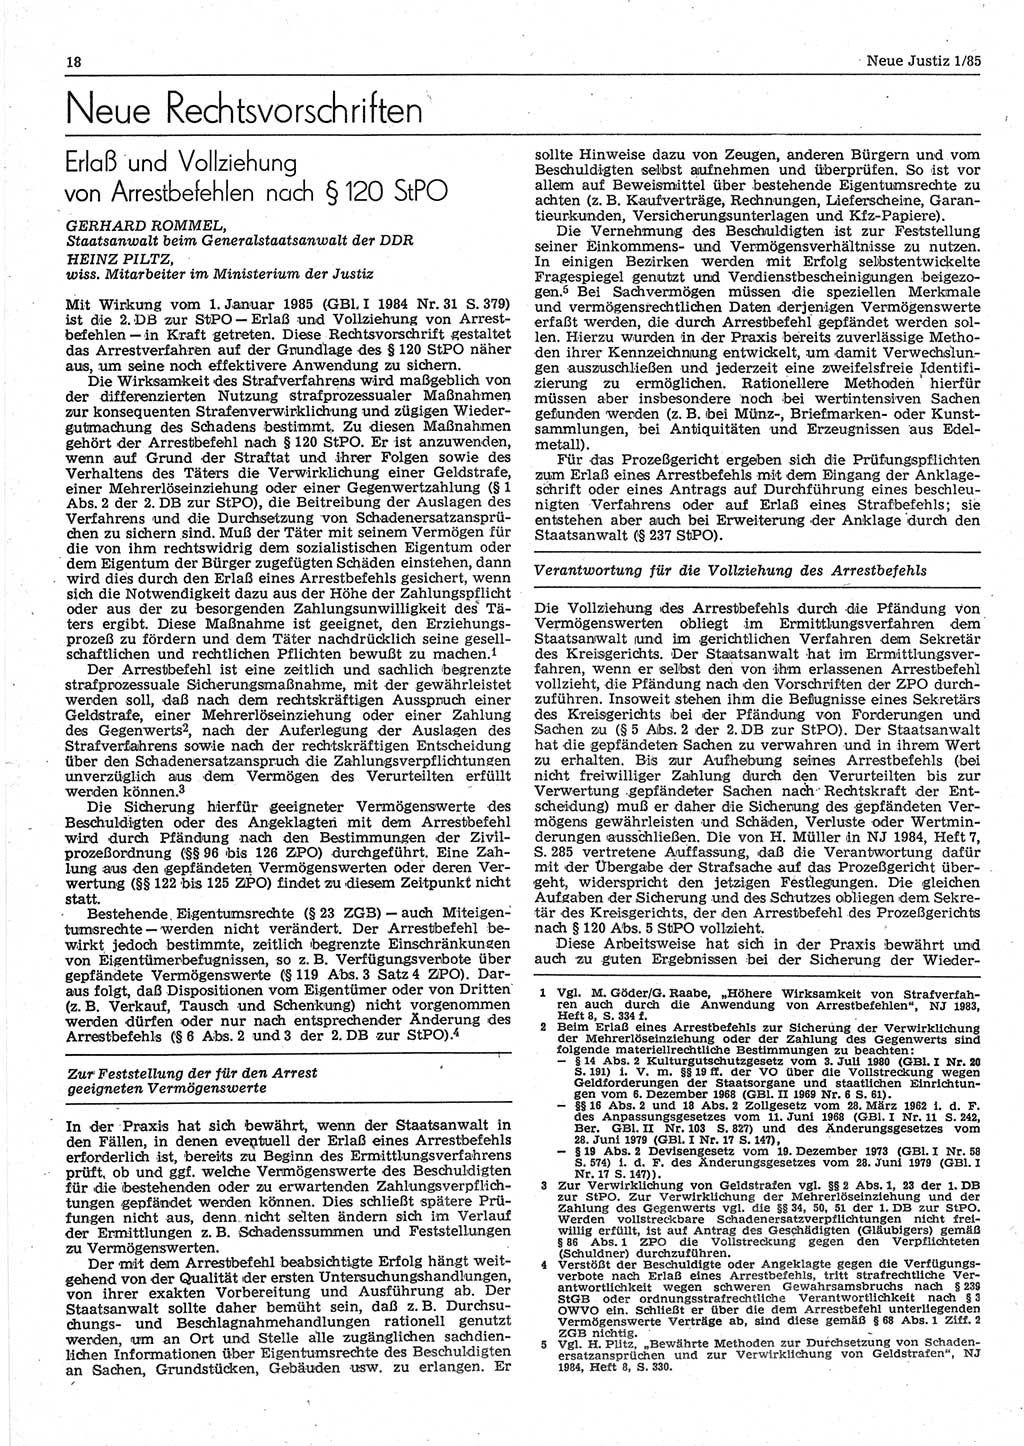 Neue Justiz (NJ), Zeitschrift für sozialistisches Recht und Gesetzlichkeit [Deutsche Demokratische Republik (DDR)], 39. Jahrgang 1985, Seite 18 (NJ DDR 1985, S. 18)